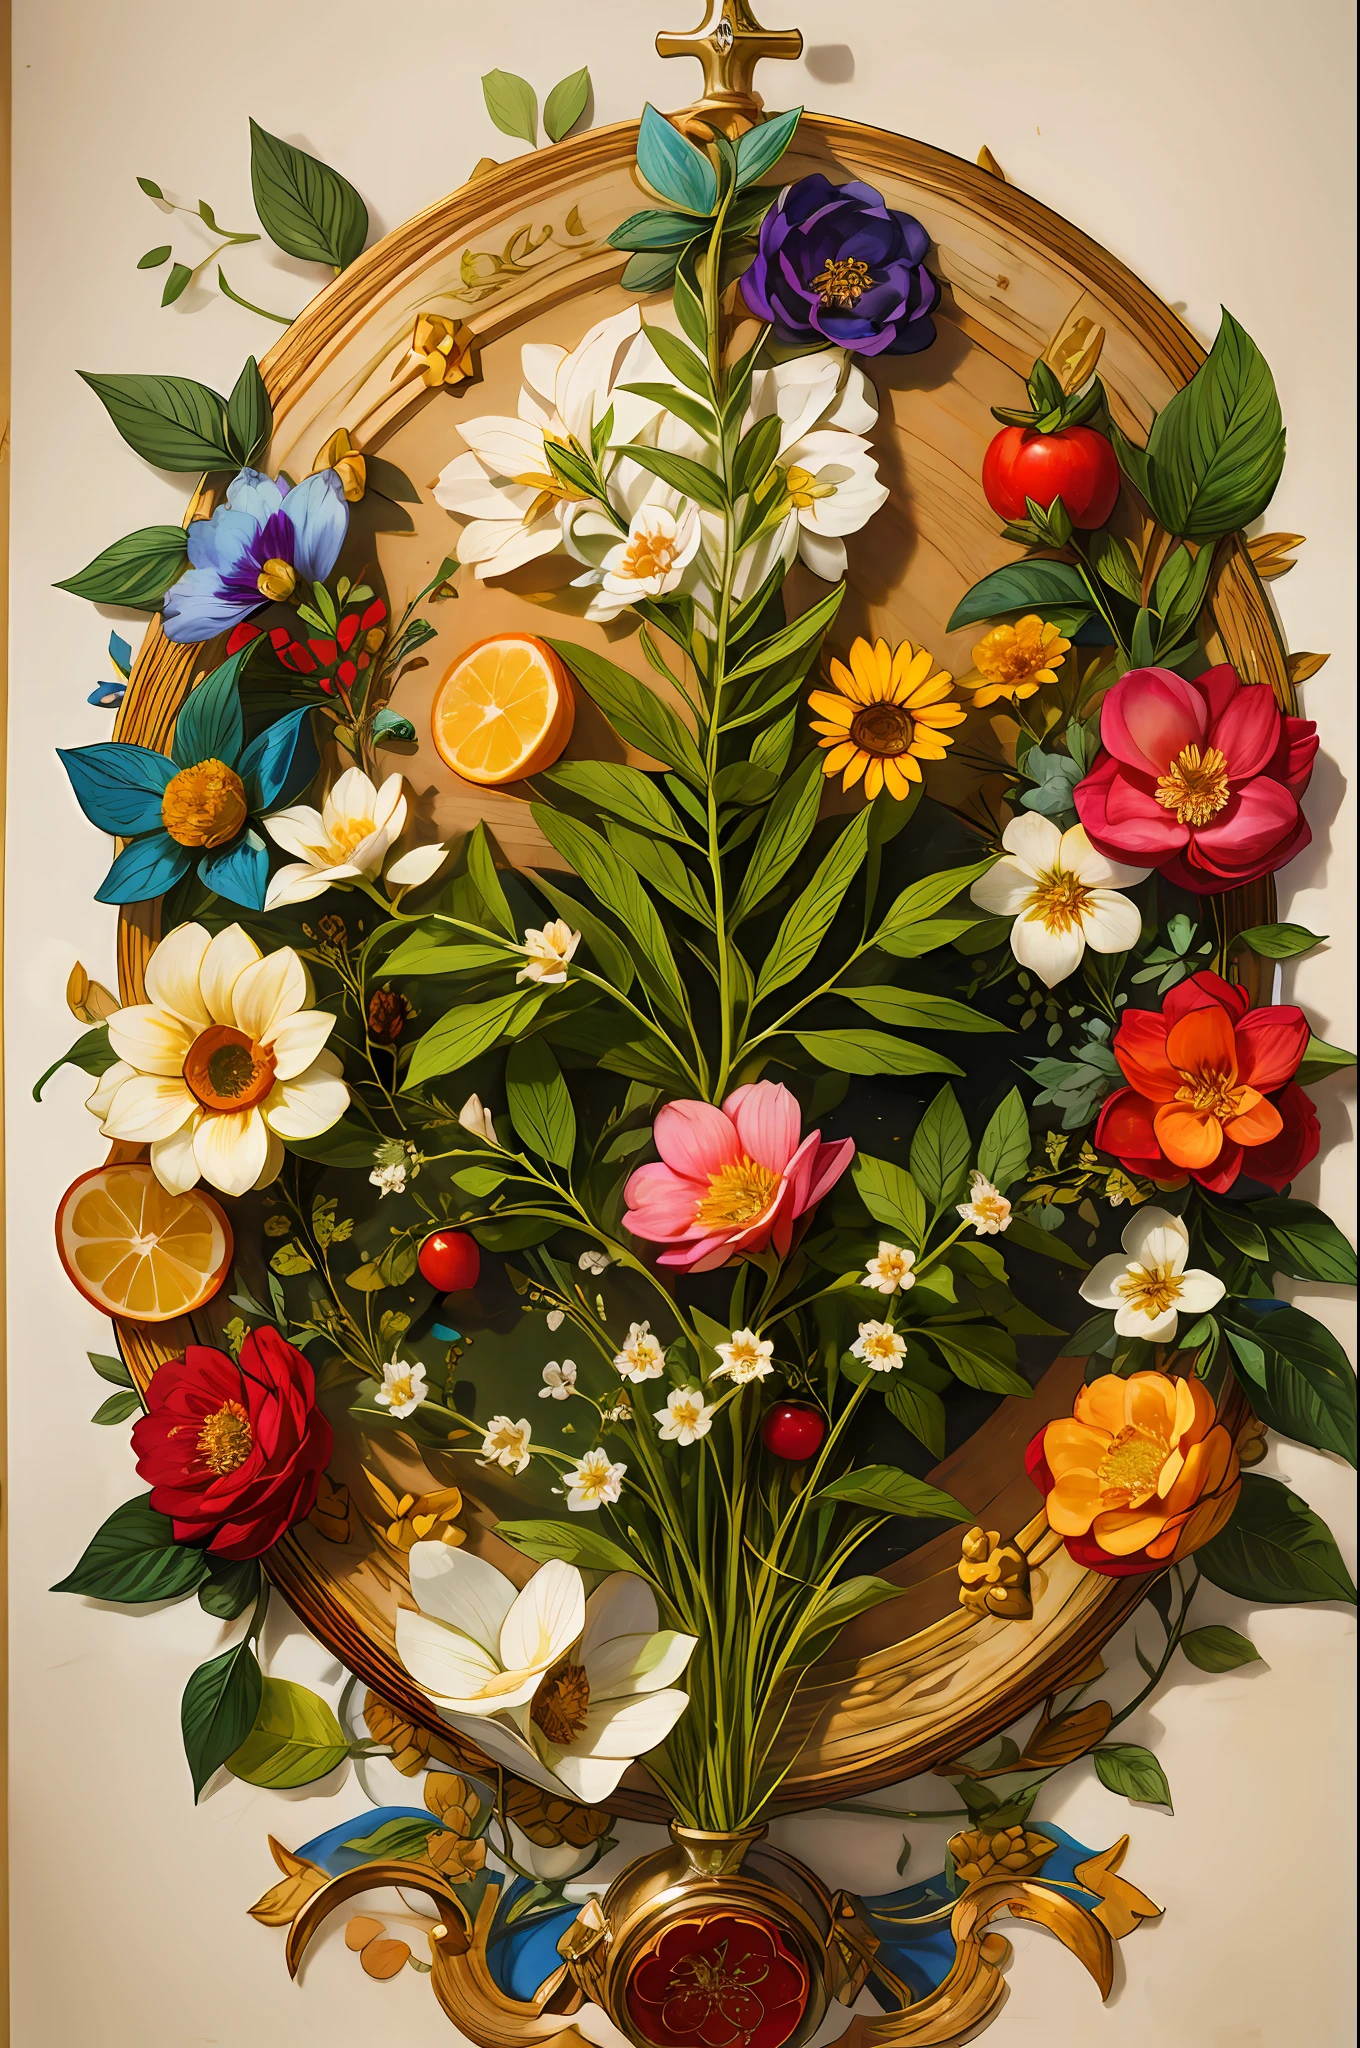 Ilustração detalhada de uma página de manuscrito medieval de ervas com ilustrações de ervas, with floral and frutas illustrations, frutas, texto complexo, detalhes excepcionalmente altos, vista aérea de cima, centrado